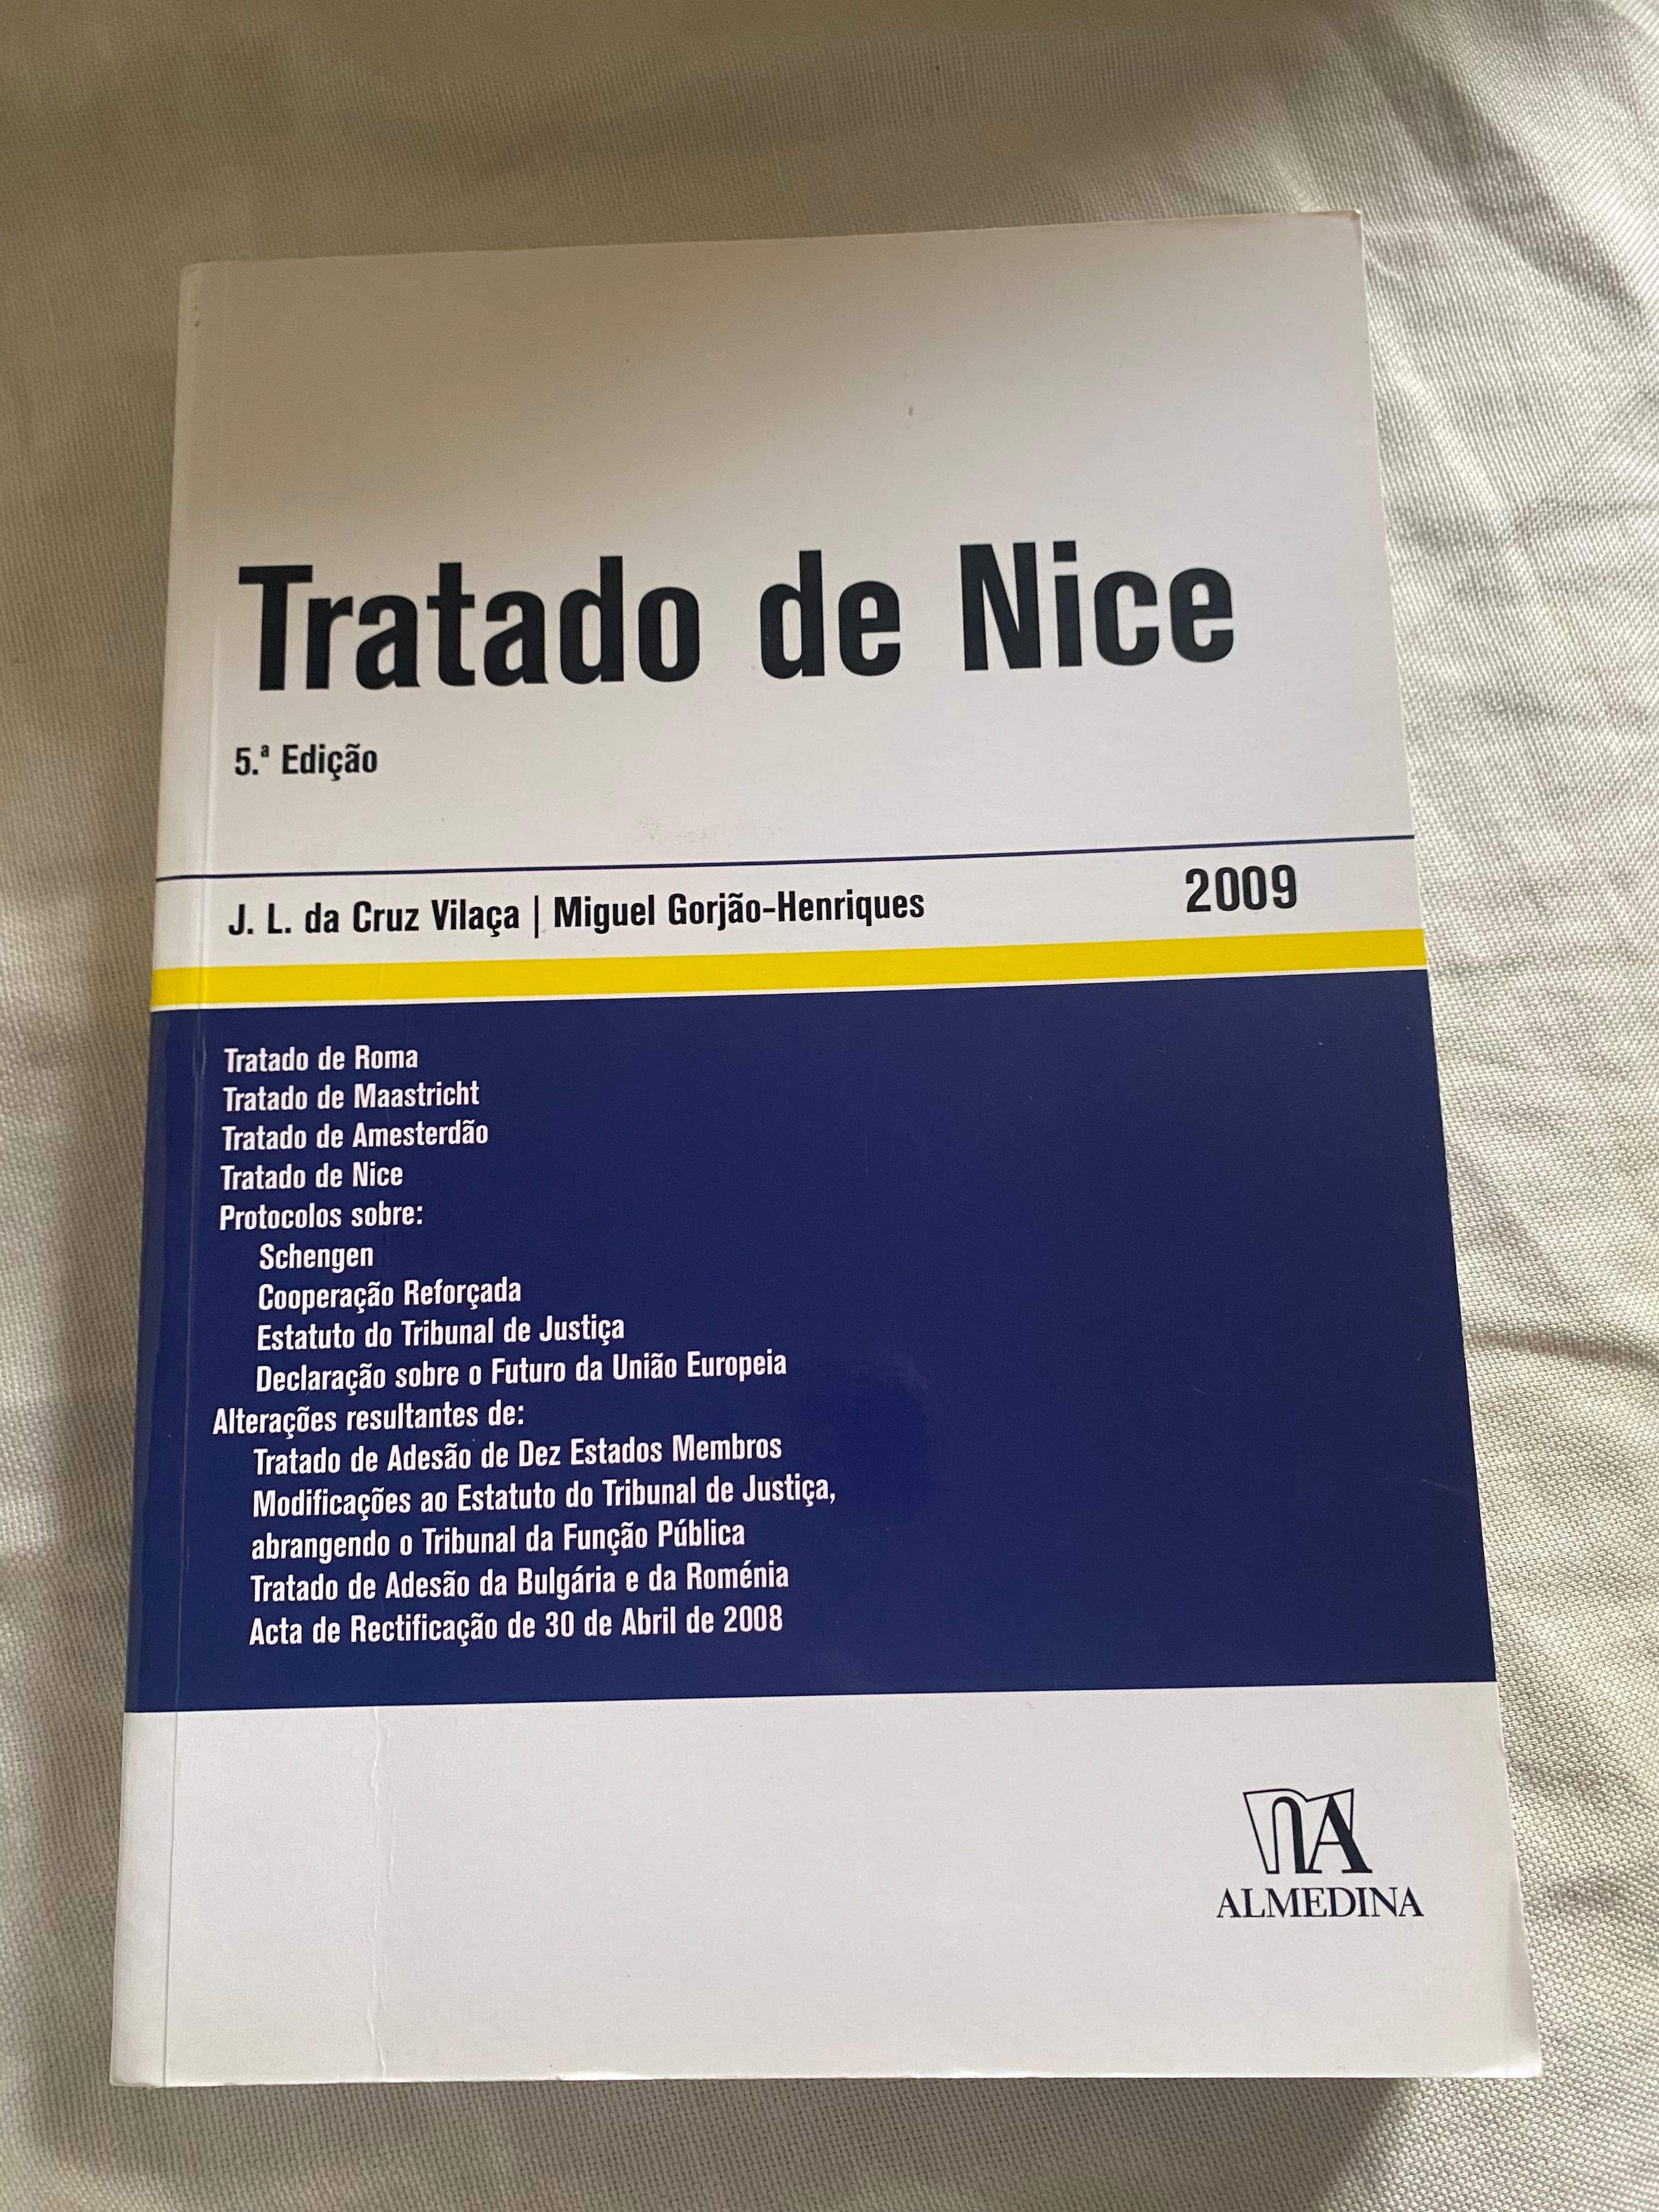 Livro “Tratado de Nice”